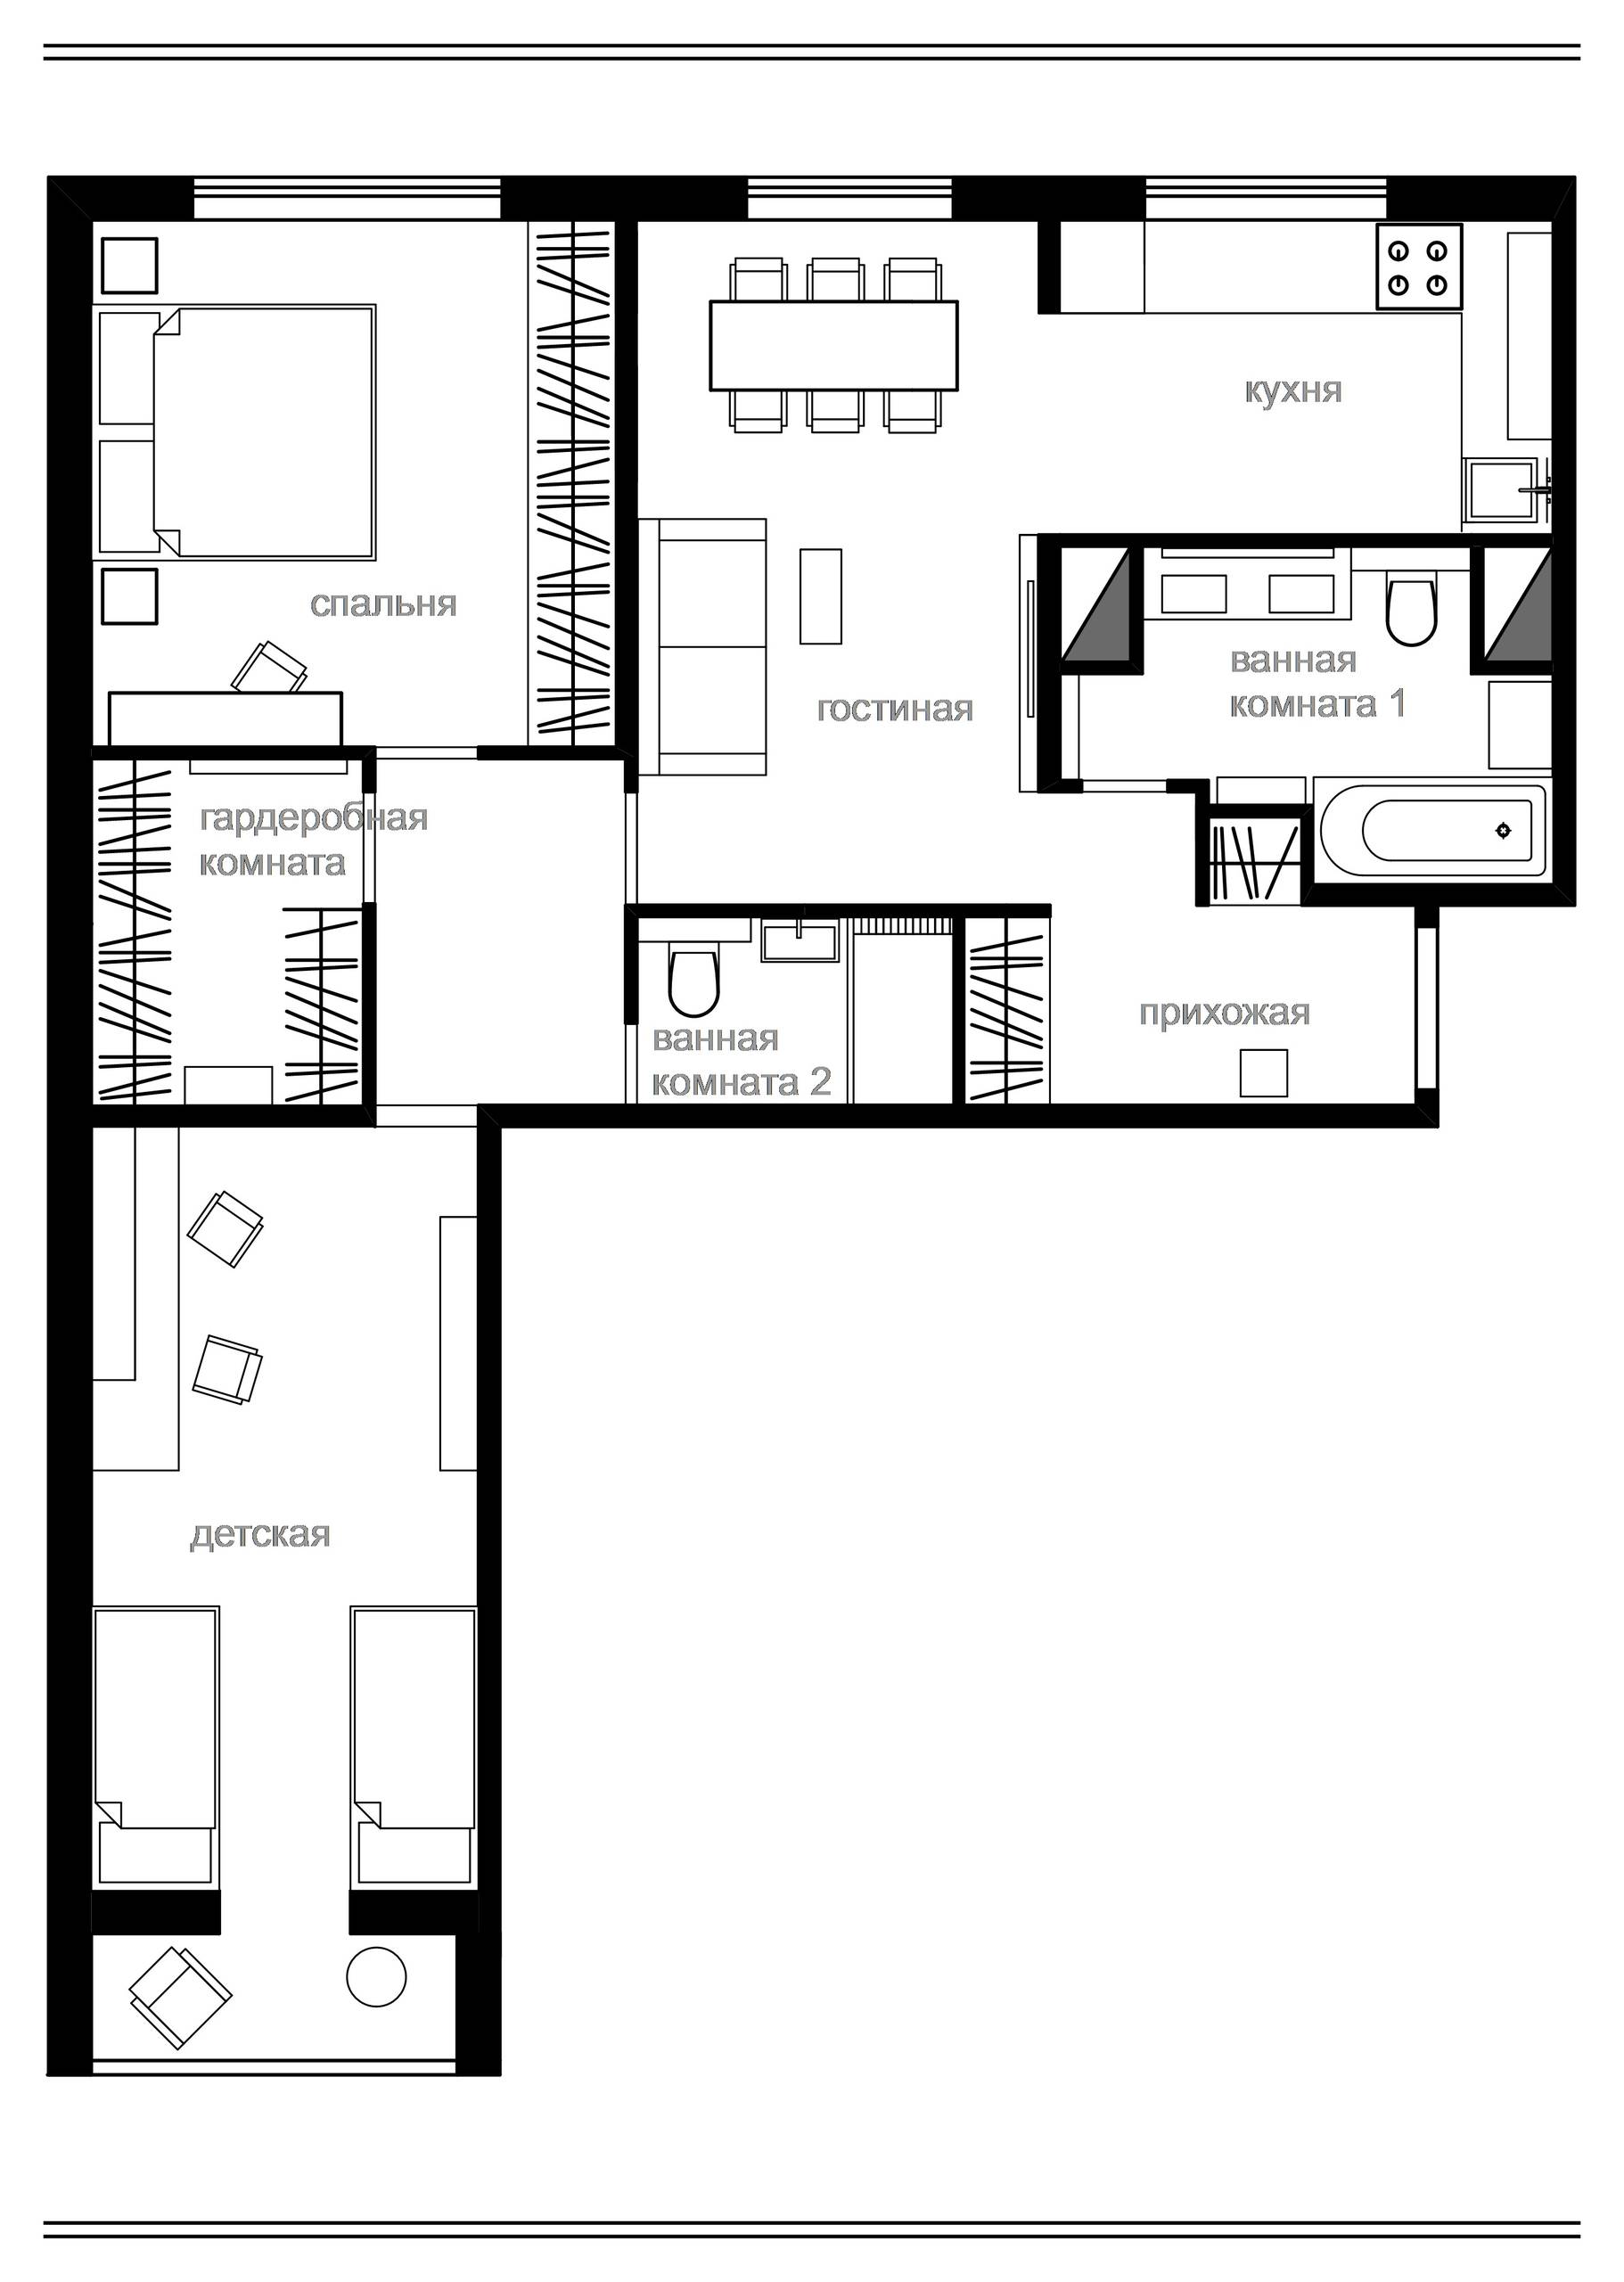 Перепланировка трехкомнатной квартиры в панельном доме (56 фото)